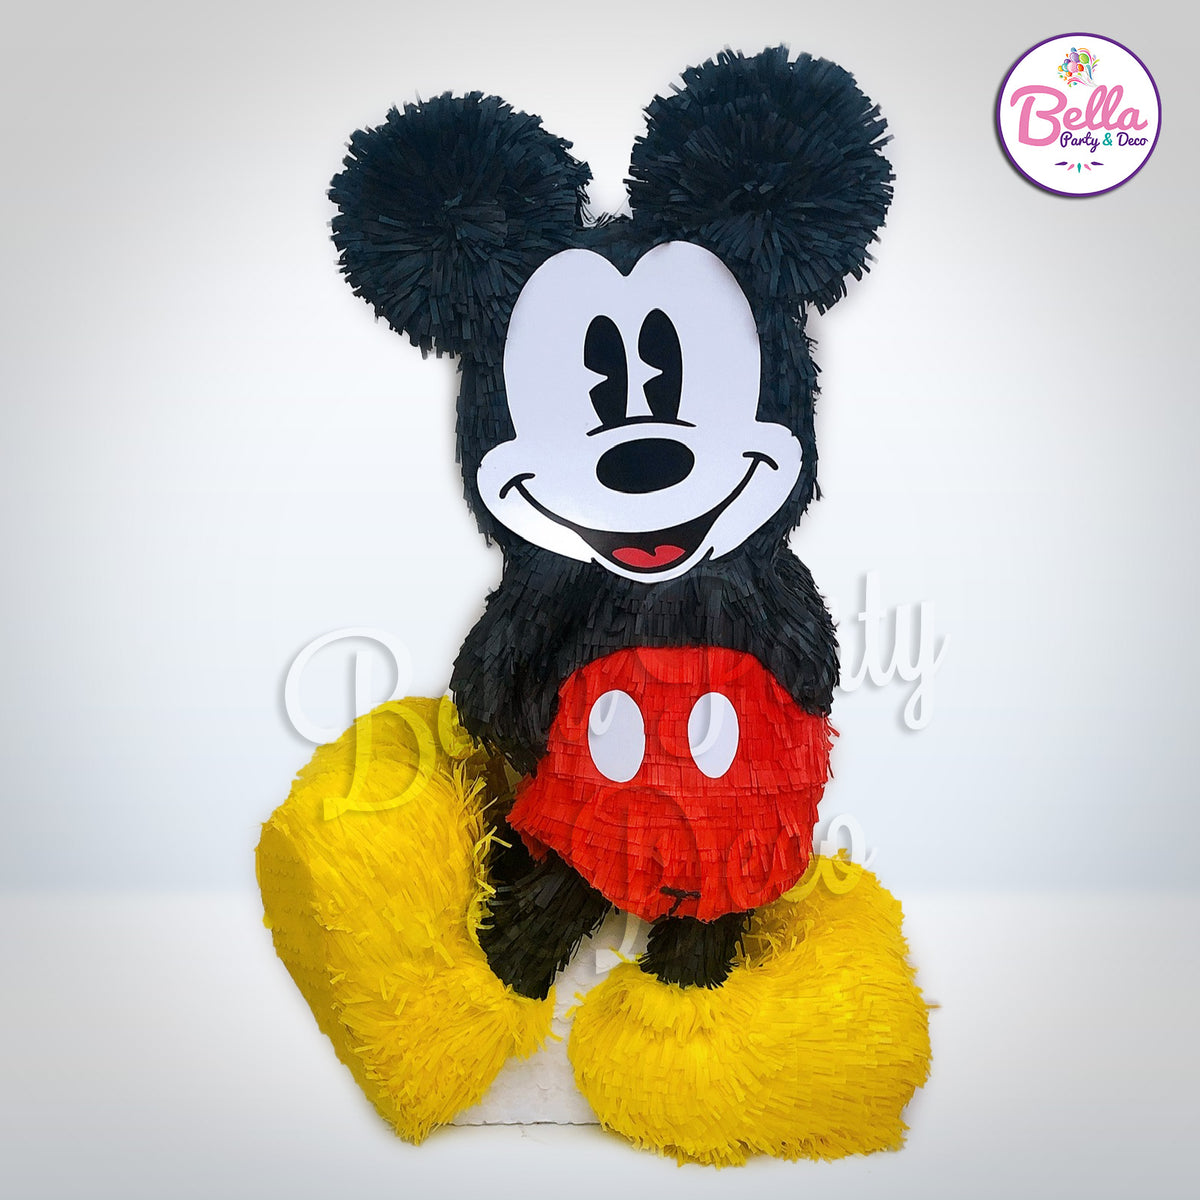 Mickey Mouse Peluche Juguetes Piñatas Juguetes Regalos